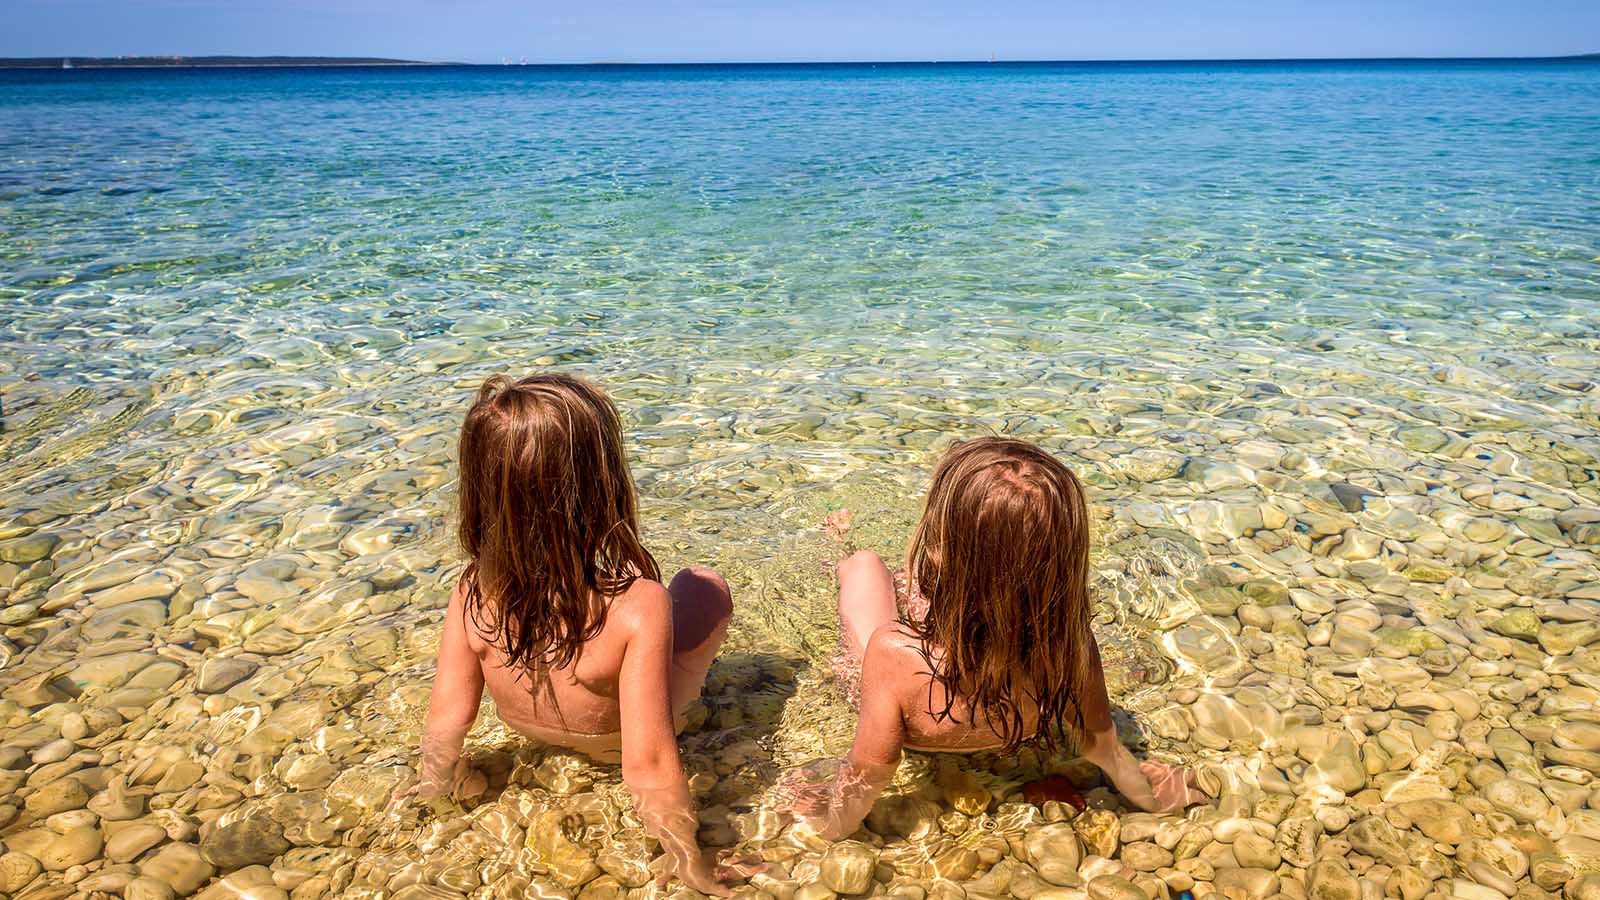 нудиский пляж с голыми детьми фото 17